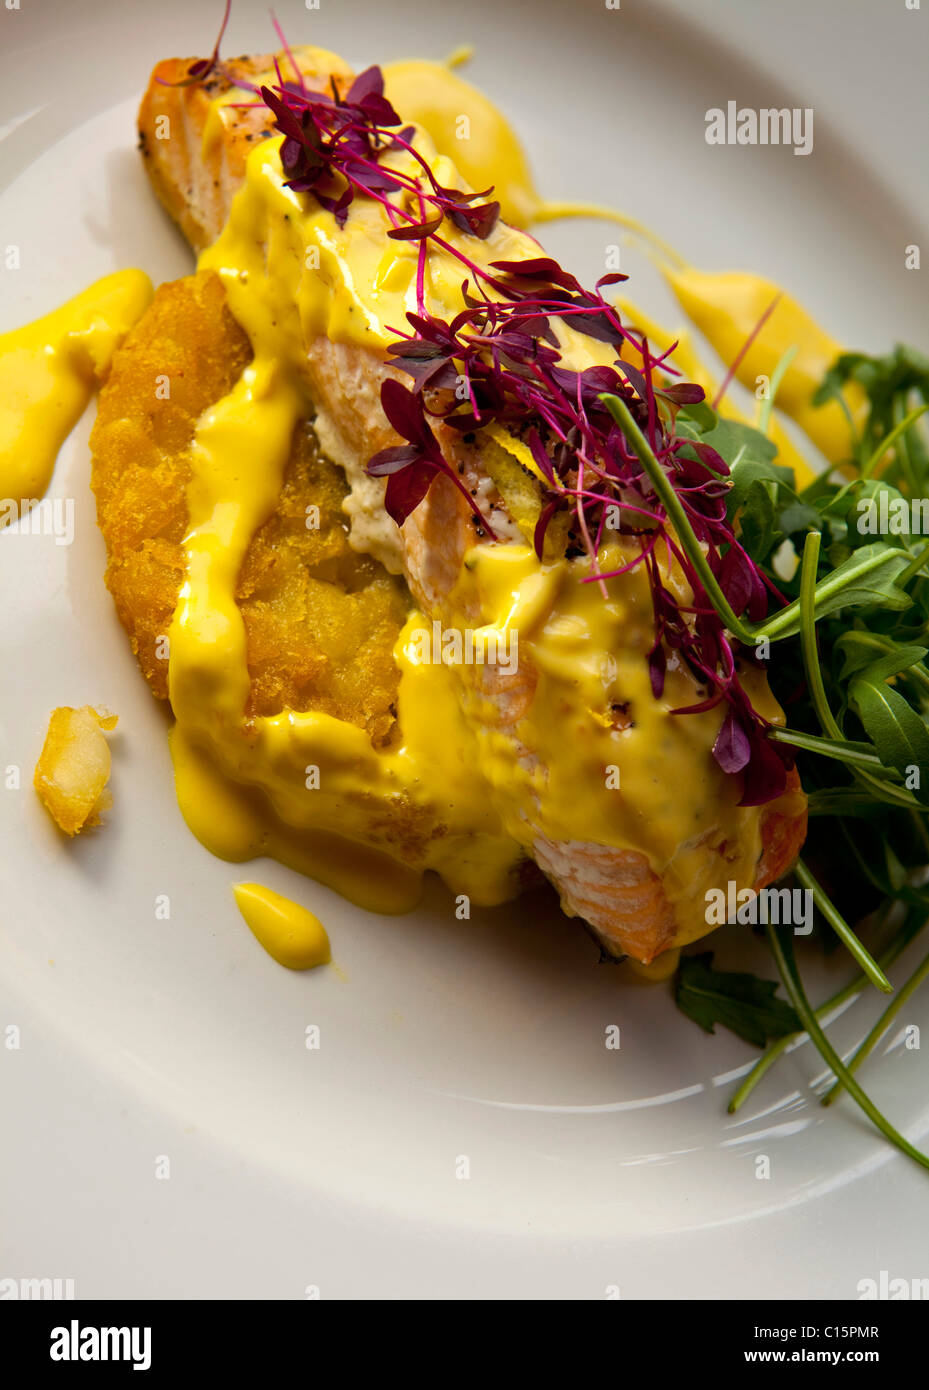 Hauptgang Filet vom Lachs Ofen gebacken mit Zitrus-Kruste auf eine  Kartoffel Rösti & "Sauce Hollandaise" 116401 Food serviert Stockfotografie  - Alamy